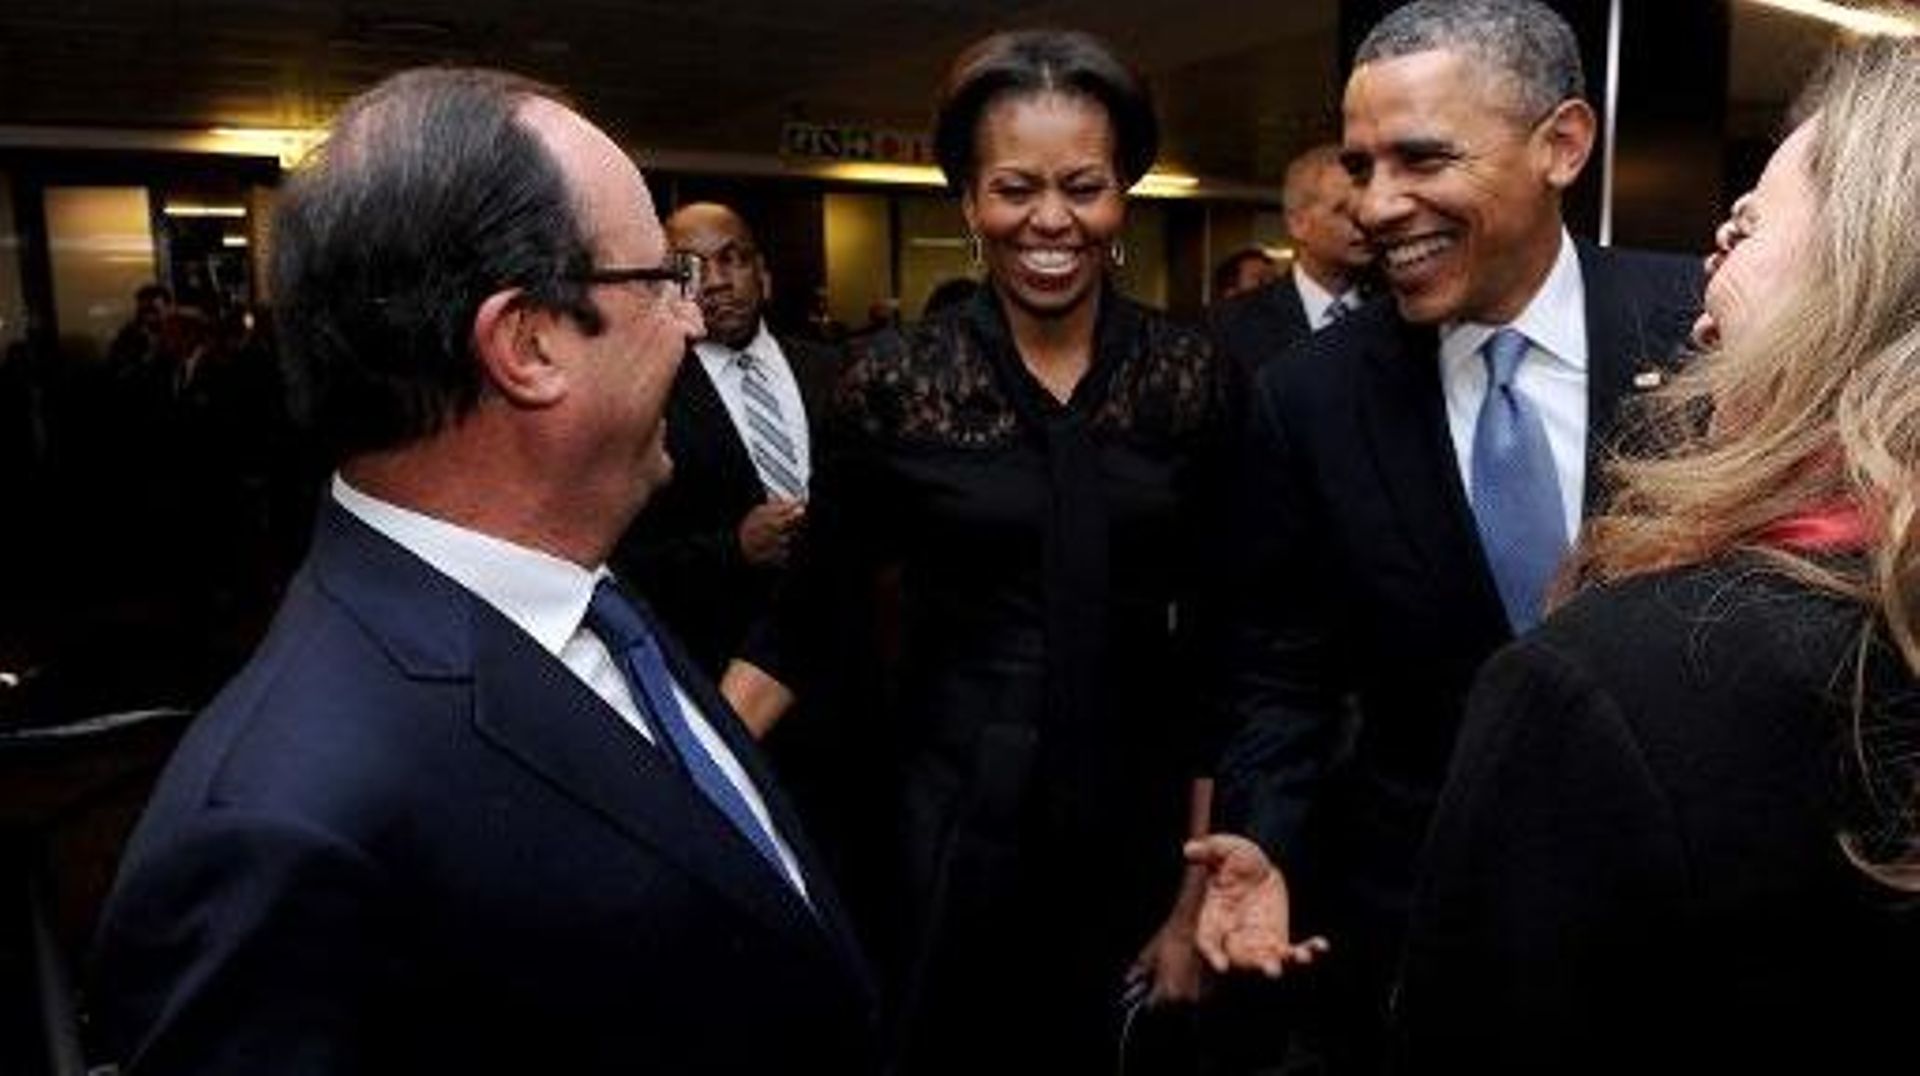 François Hollande et Barack Obama le 10 décembre 3013 à Johannesburg